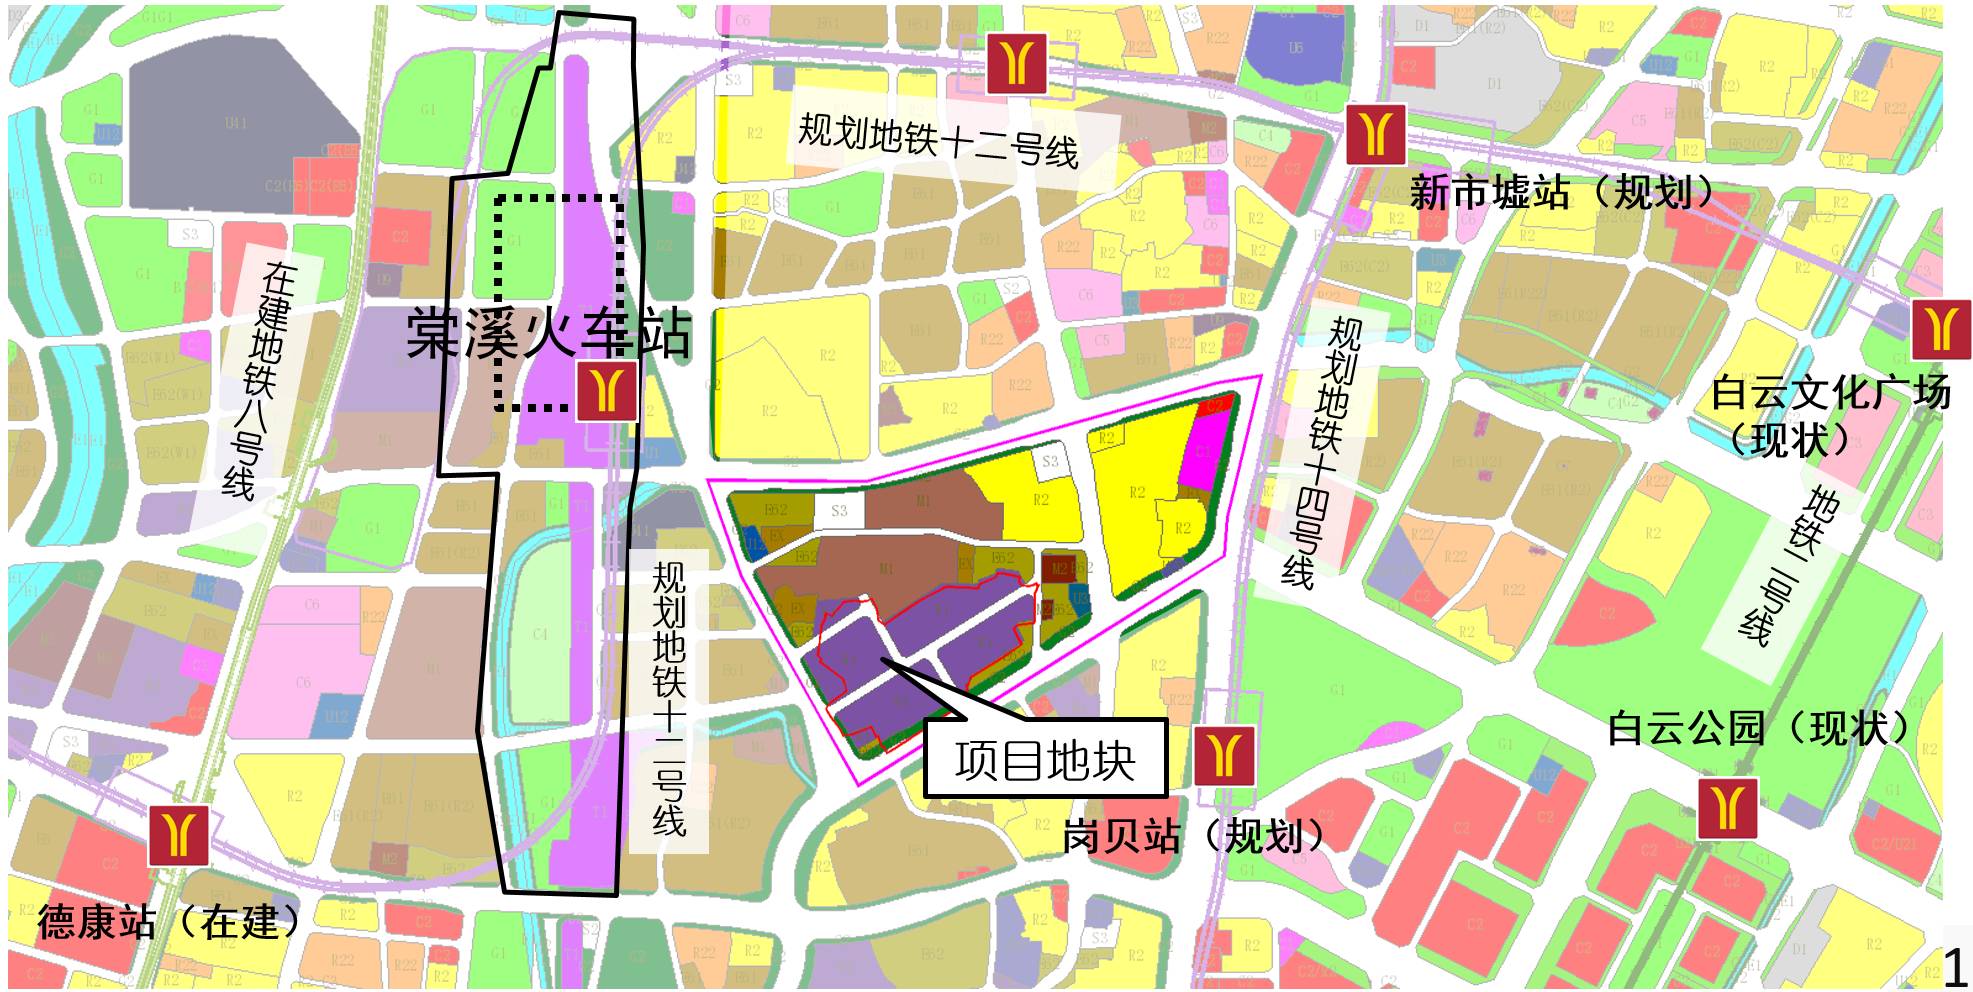 广州站明年改造,第二火车站周边规划抢先看!